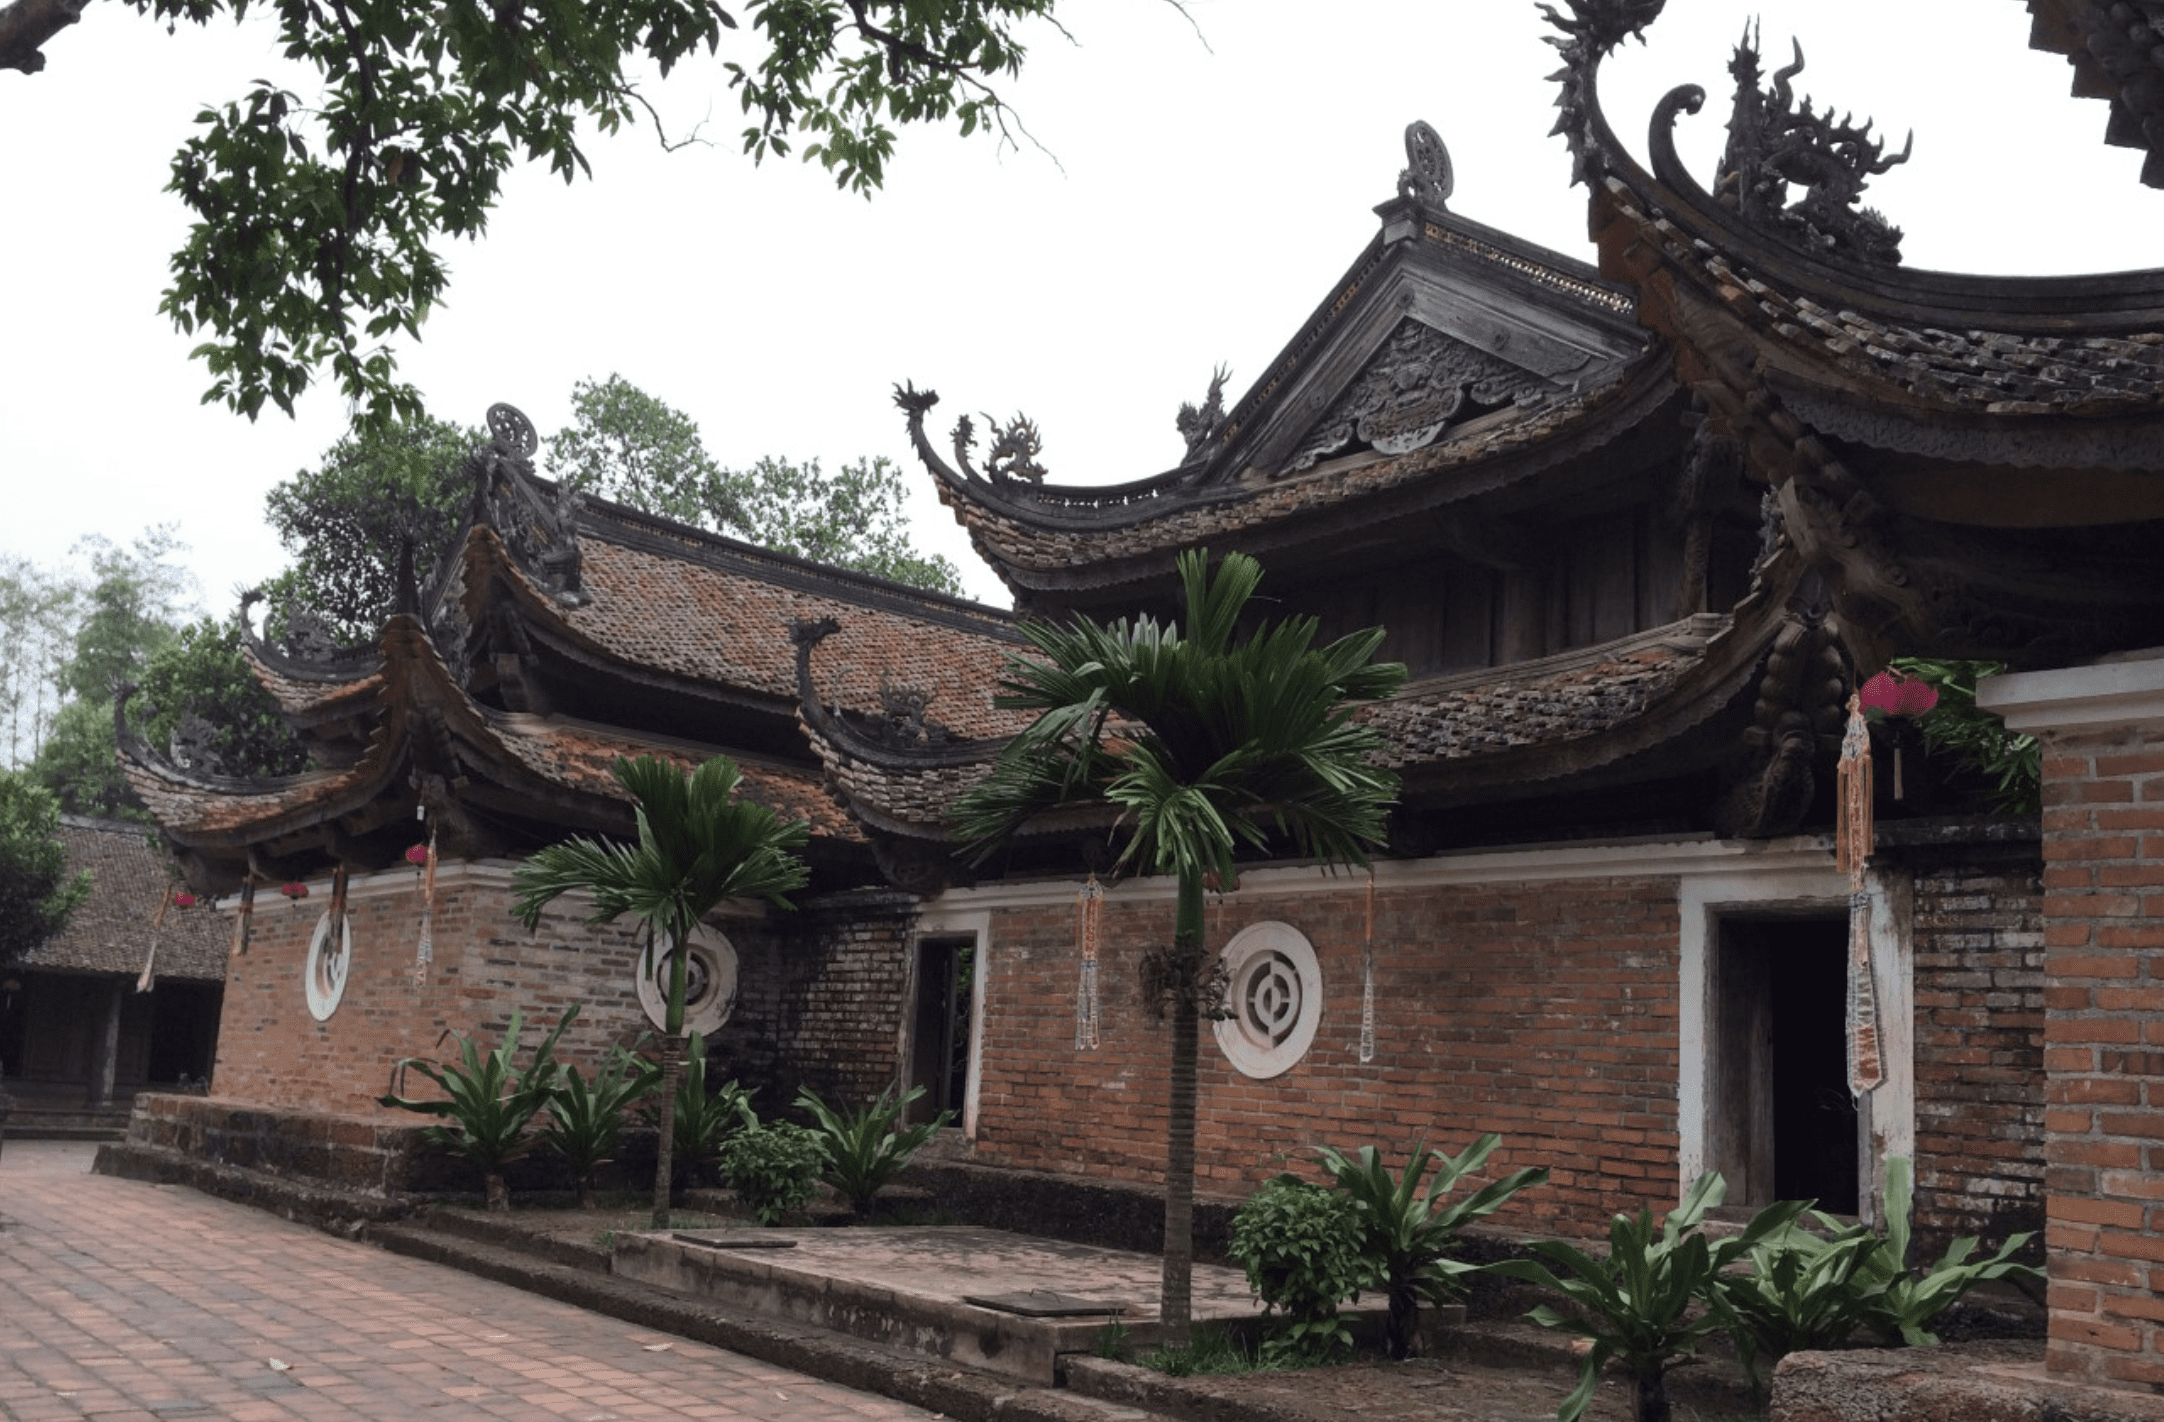 Chùa Tây Phương là một trong những chùa cổ nhất tại Hà Nội